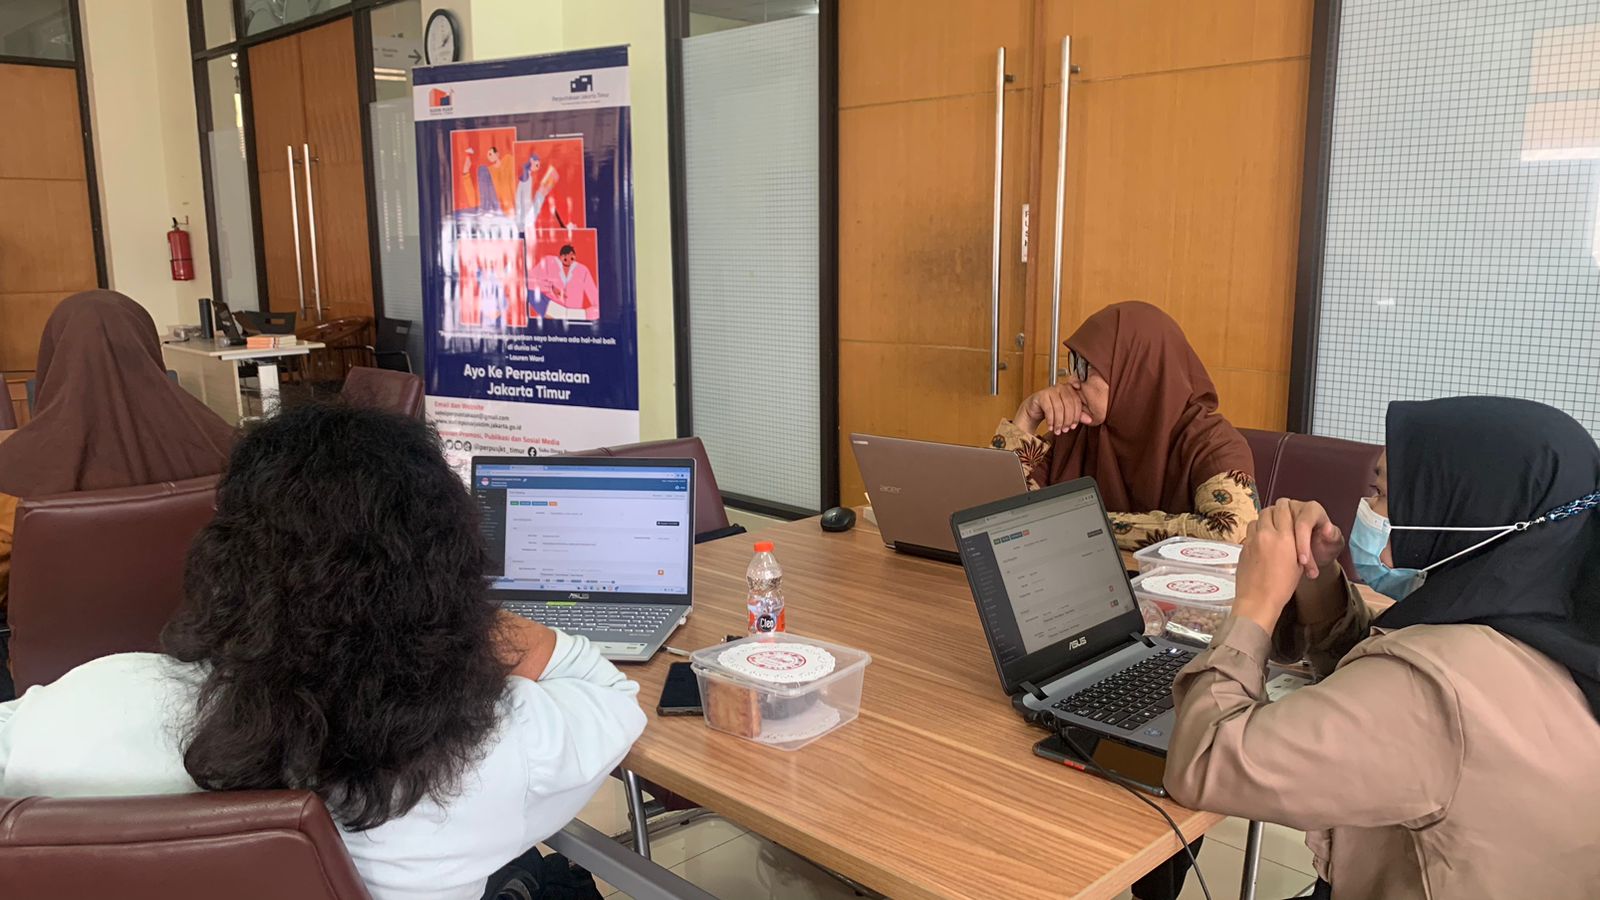 Pembinaan Perpustakaan Pada Satuan Pendidikan Menengah & Khusus Dengan Standar Nasional Perpustakaan Untuk Wilayah Kota Administrasi Jakarta Timur